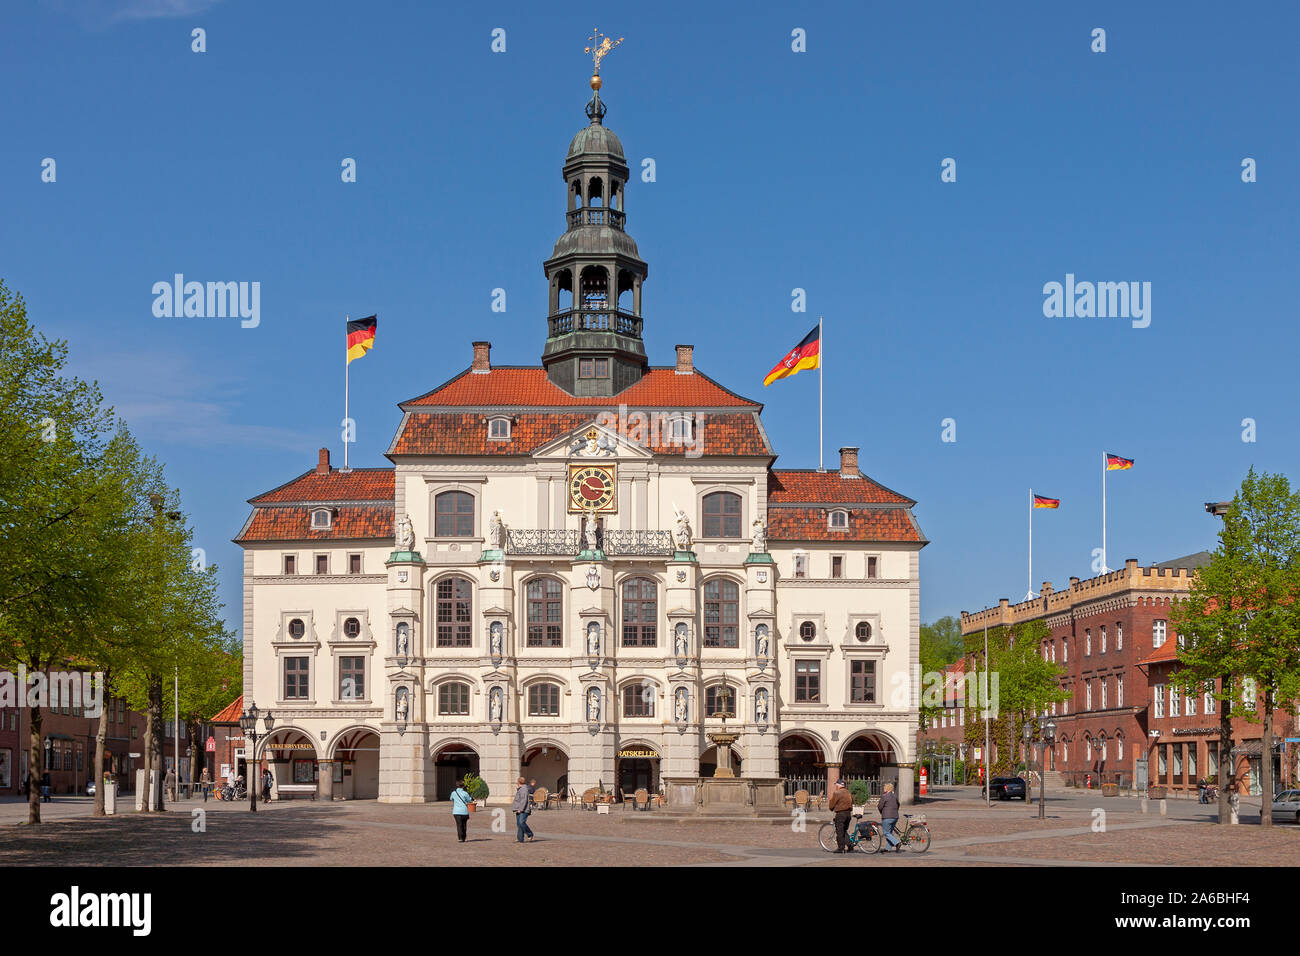 Das Rathaus von Lüneburg in Niedersachsen. Stockfoto